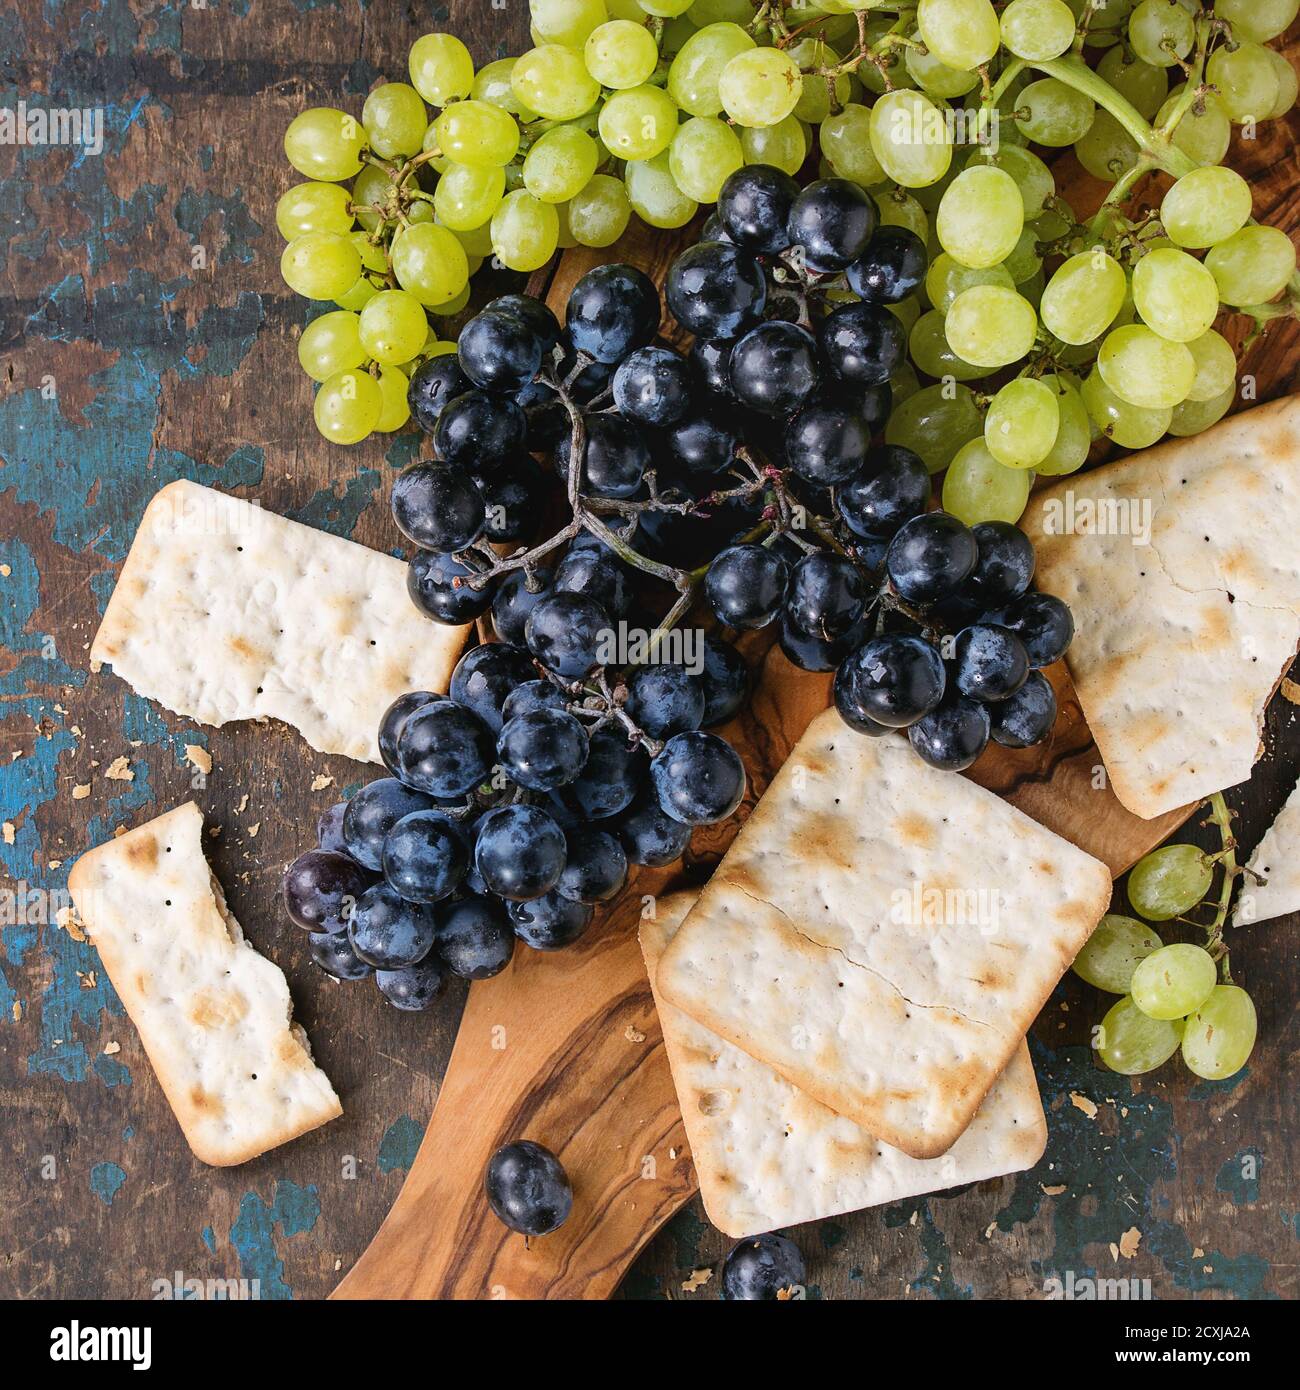 Trauben von reifen feuchten roten und weißen Trauben mit Crackern Snack auf Olivenholz Schneidebrett über alten dunklen Holzhintergrund. Draufsicht. Quadratisches Bild Stockfoto